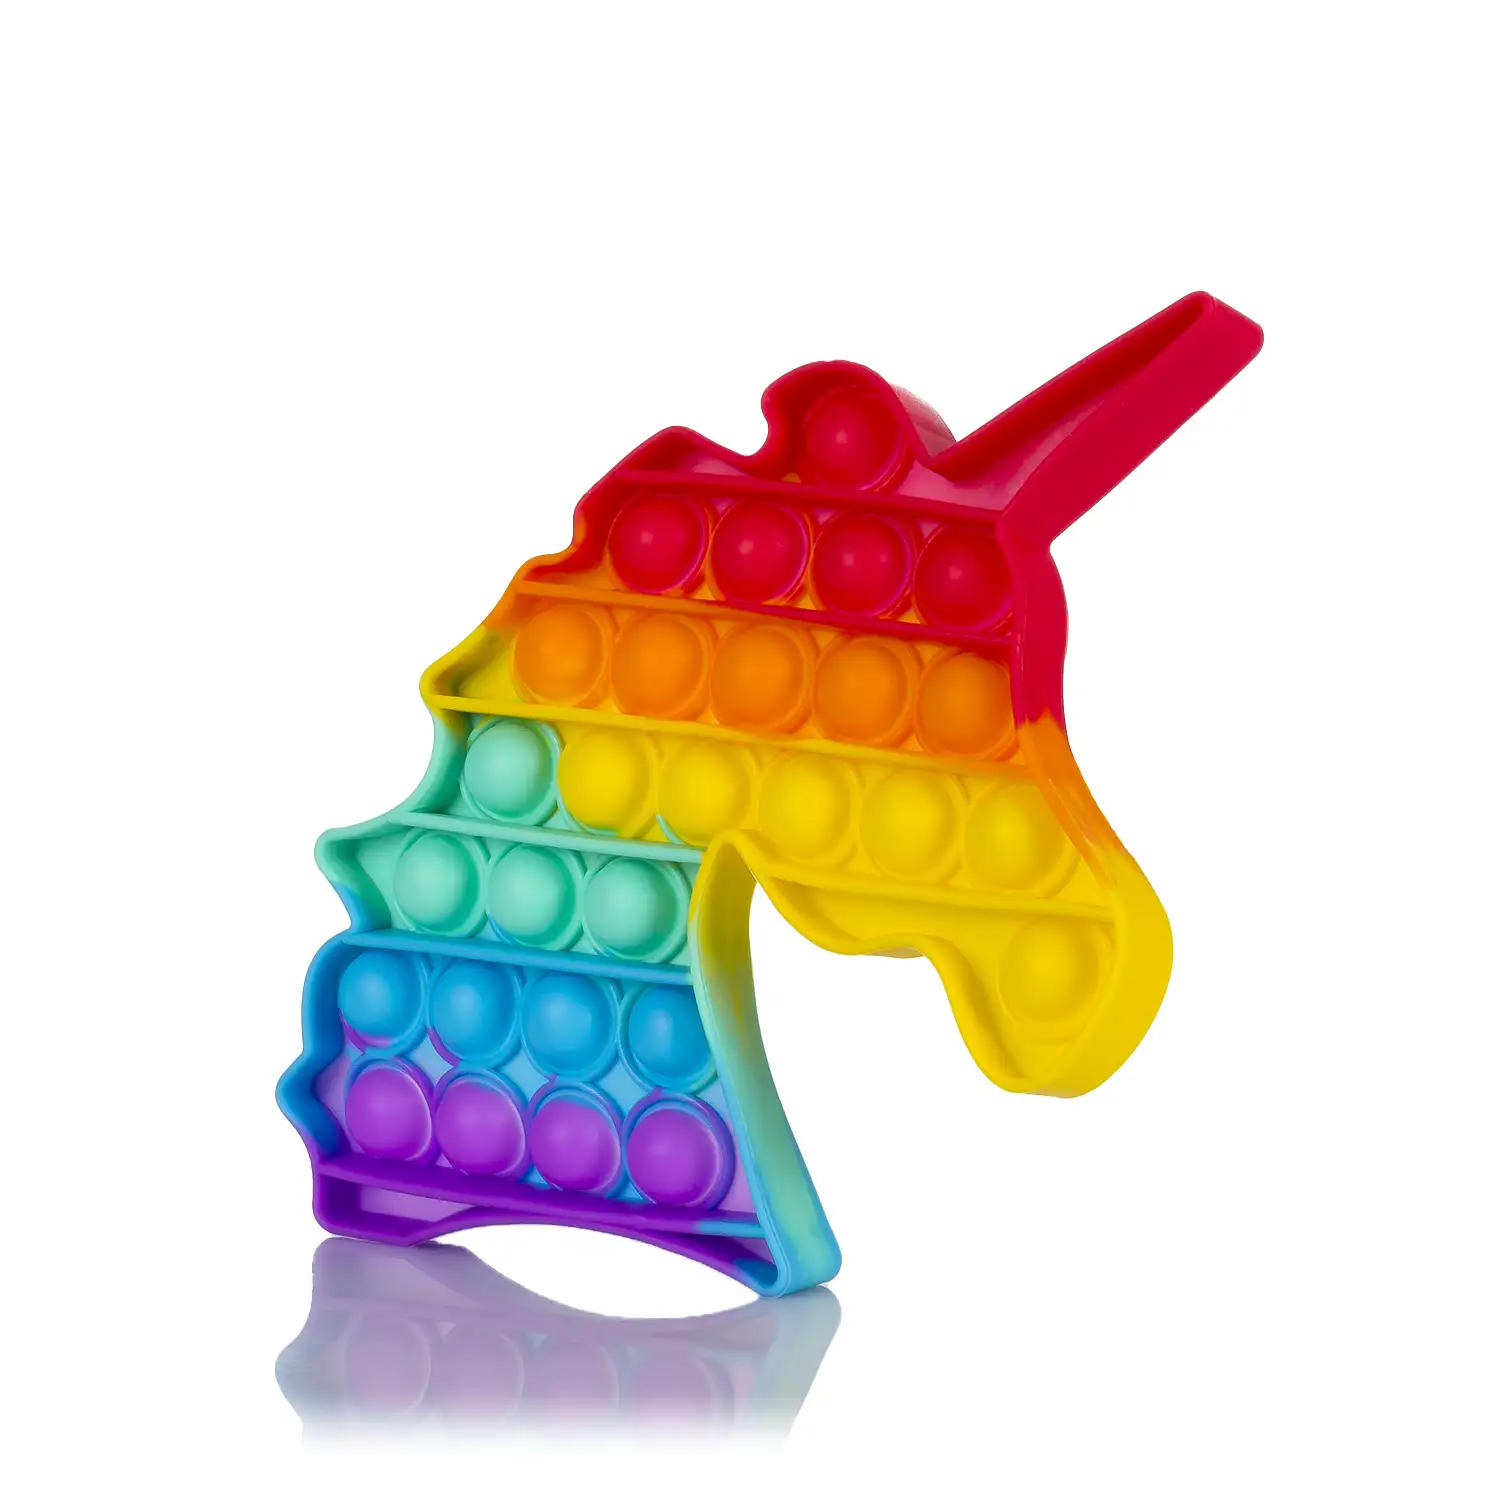 Bubble Pop It juguete sensitivo desestresante, burbujas de silicona para apretar y pulsar. Diseño unicornio multicolor.